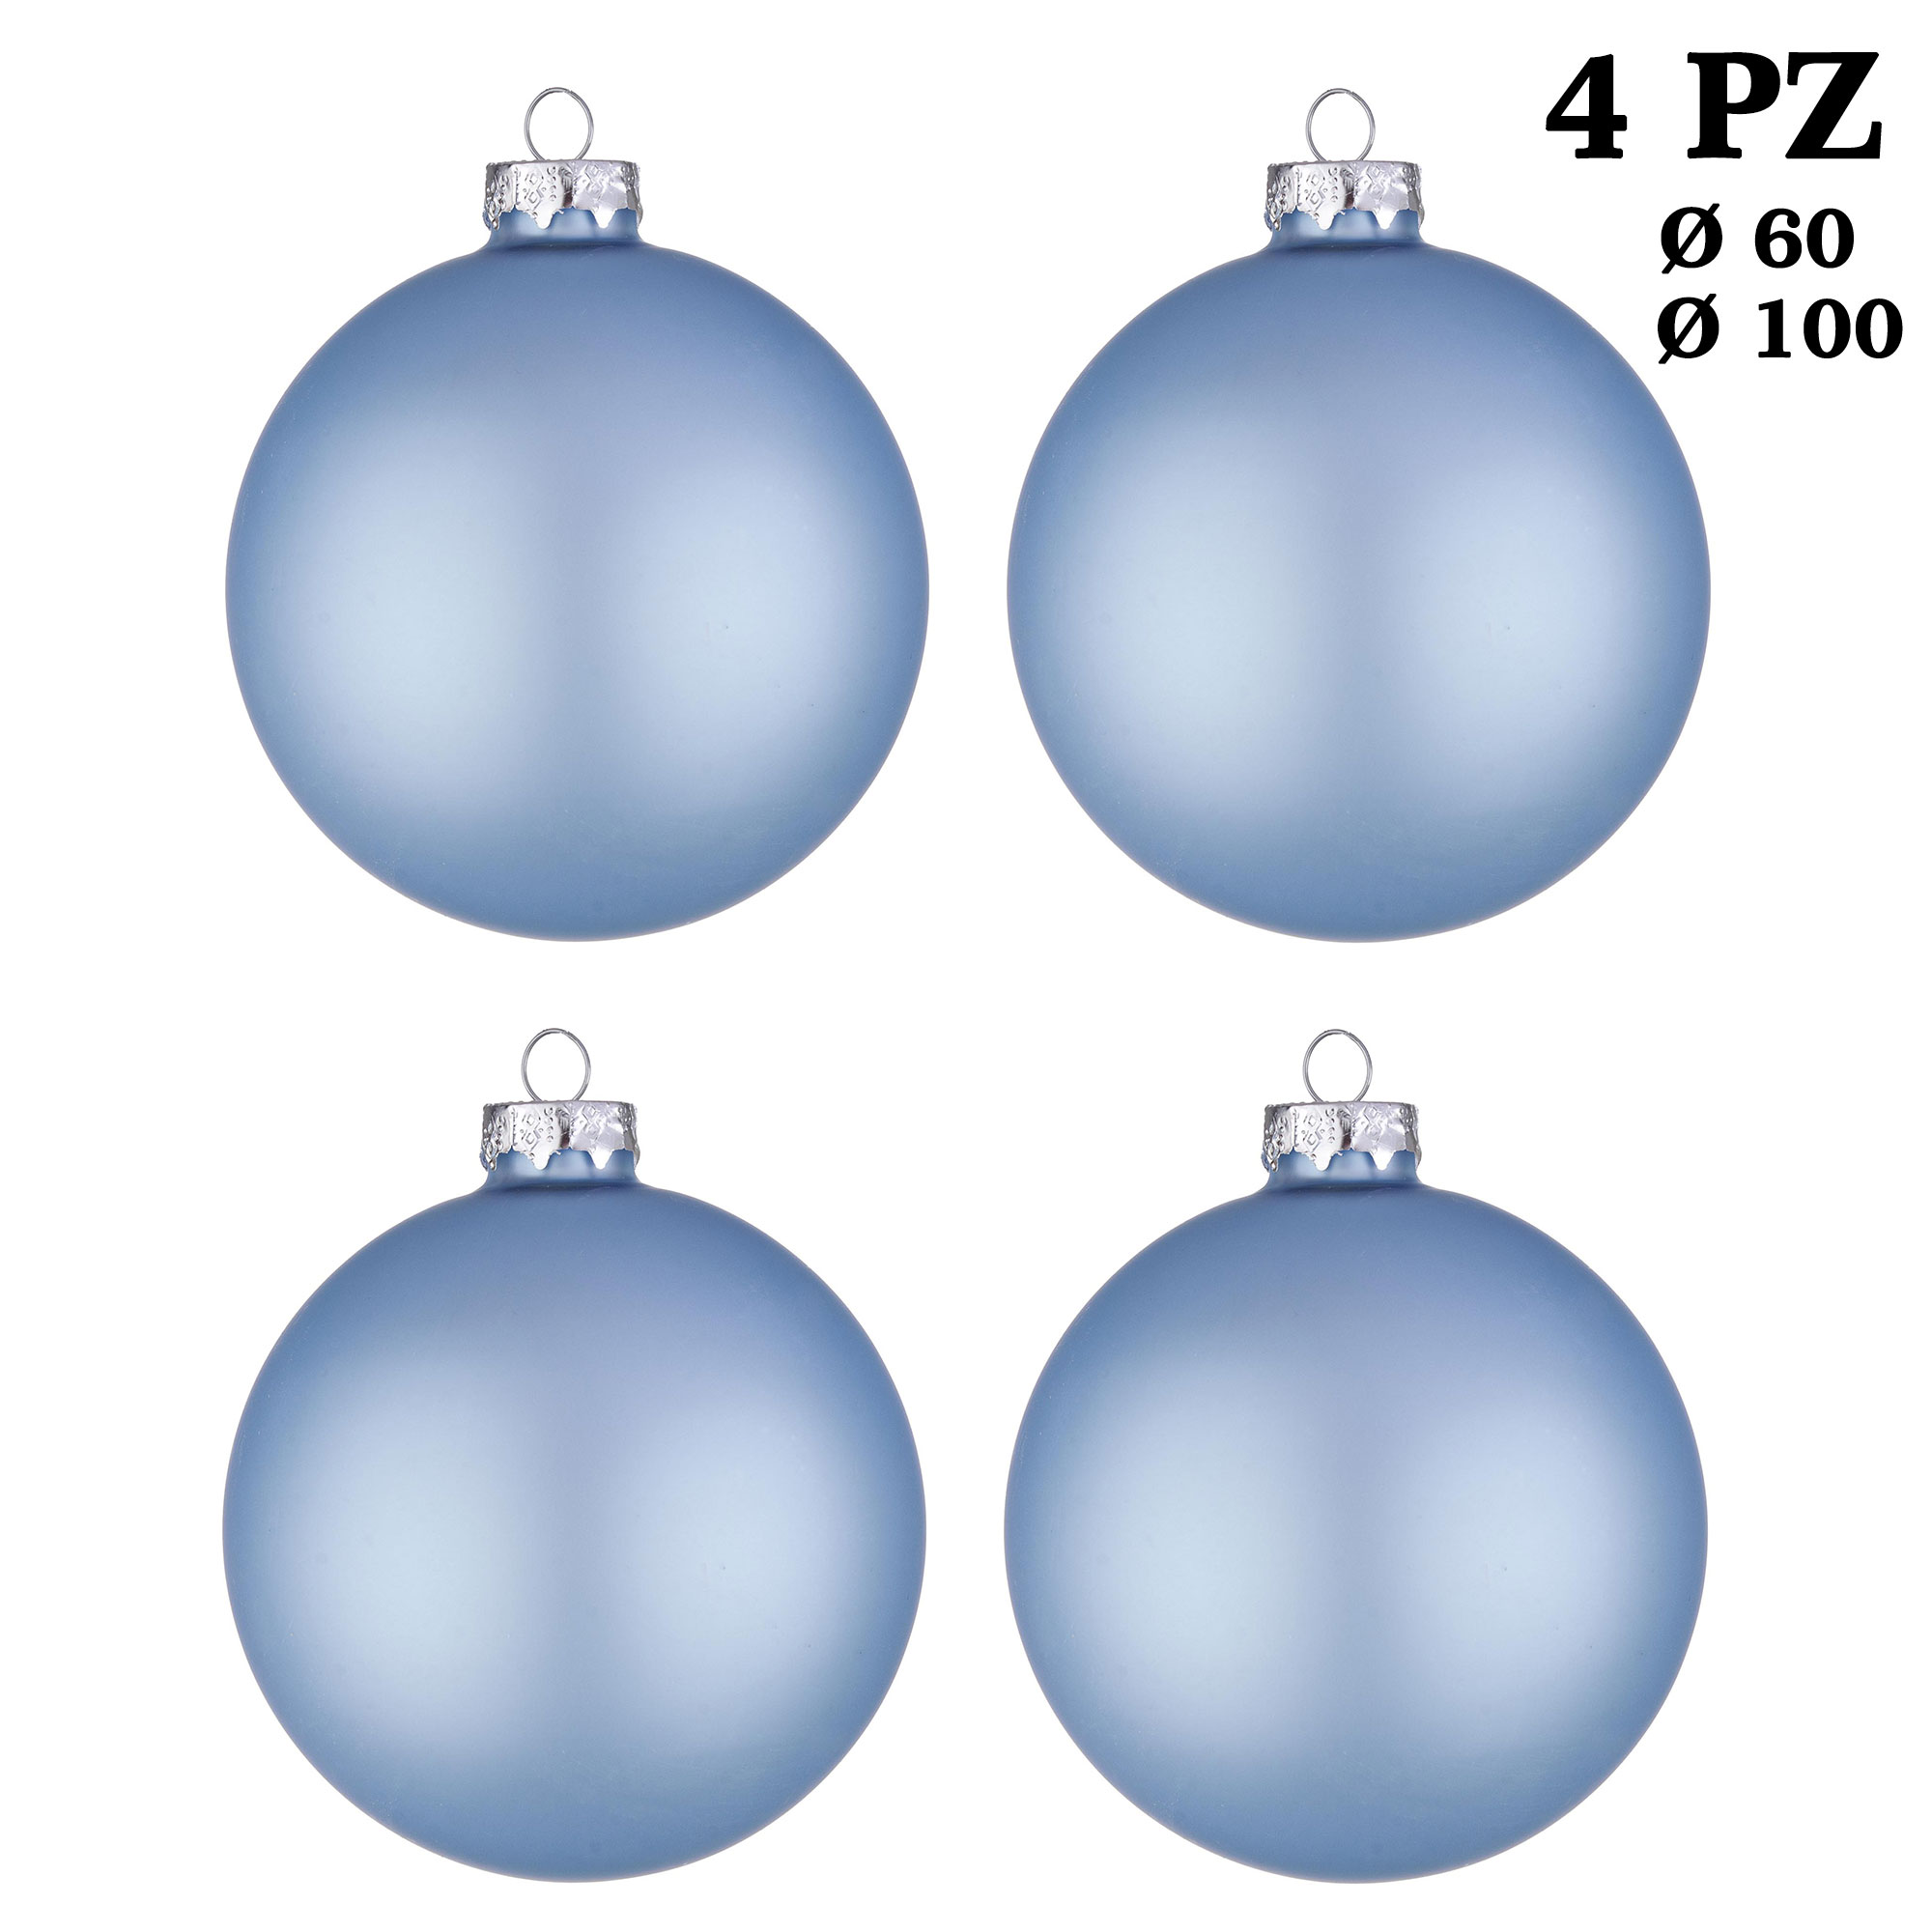 Albero Di Natale Diametro 60.Palle Di Natale In Vetro Azzurro Opaco Per Albero Addobbi Decorazioni Natalizie Diametro 100 Mm